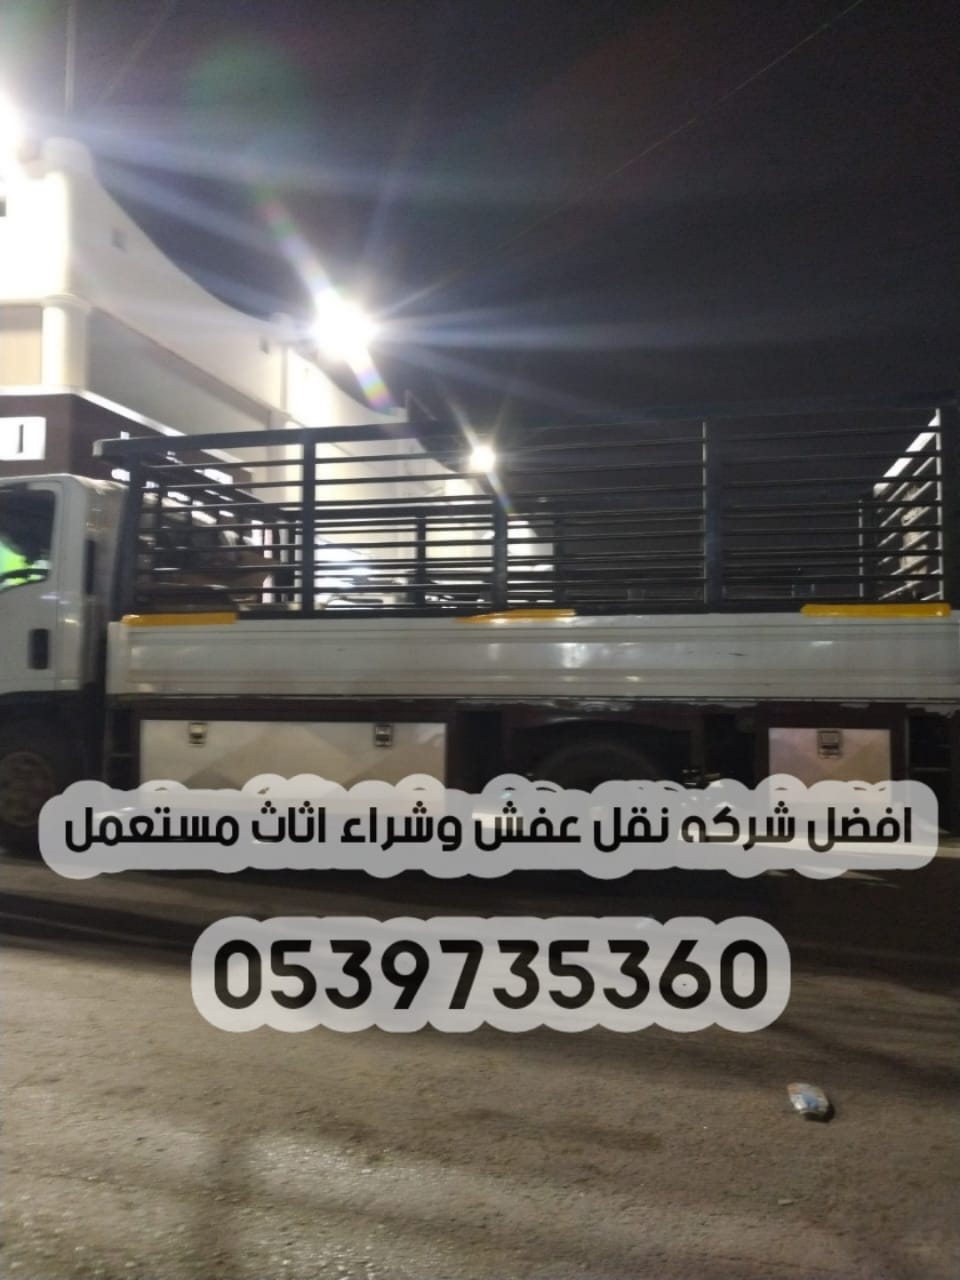 الرياض - دينا نقل عفش داخل الرياض 0539735360 توصيل الاثاث مشاوير 171046514505651